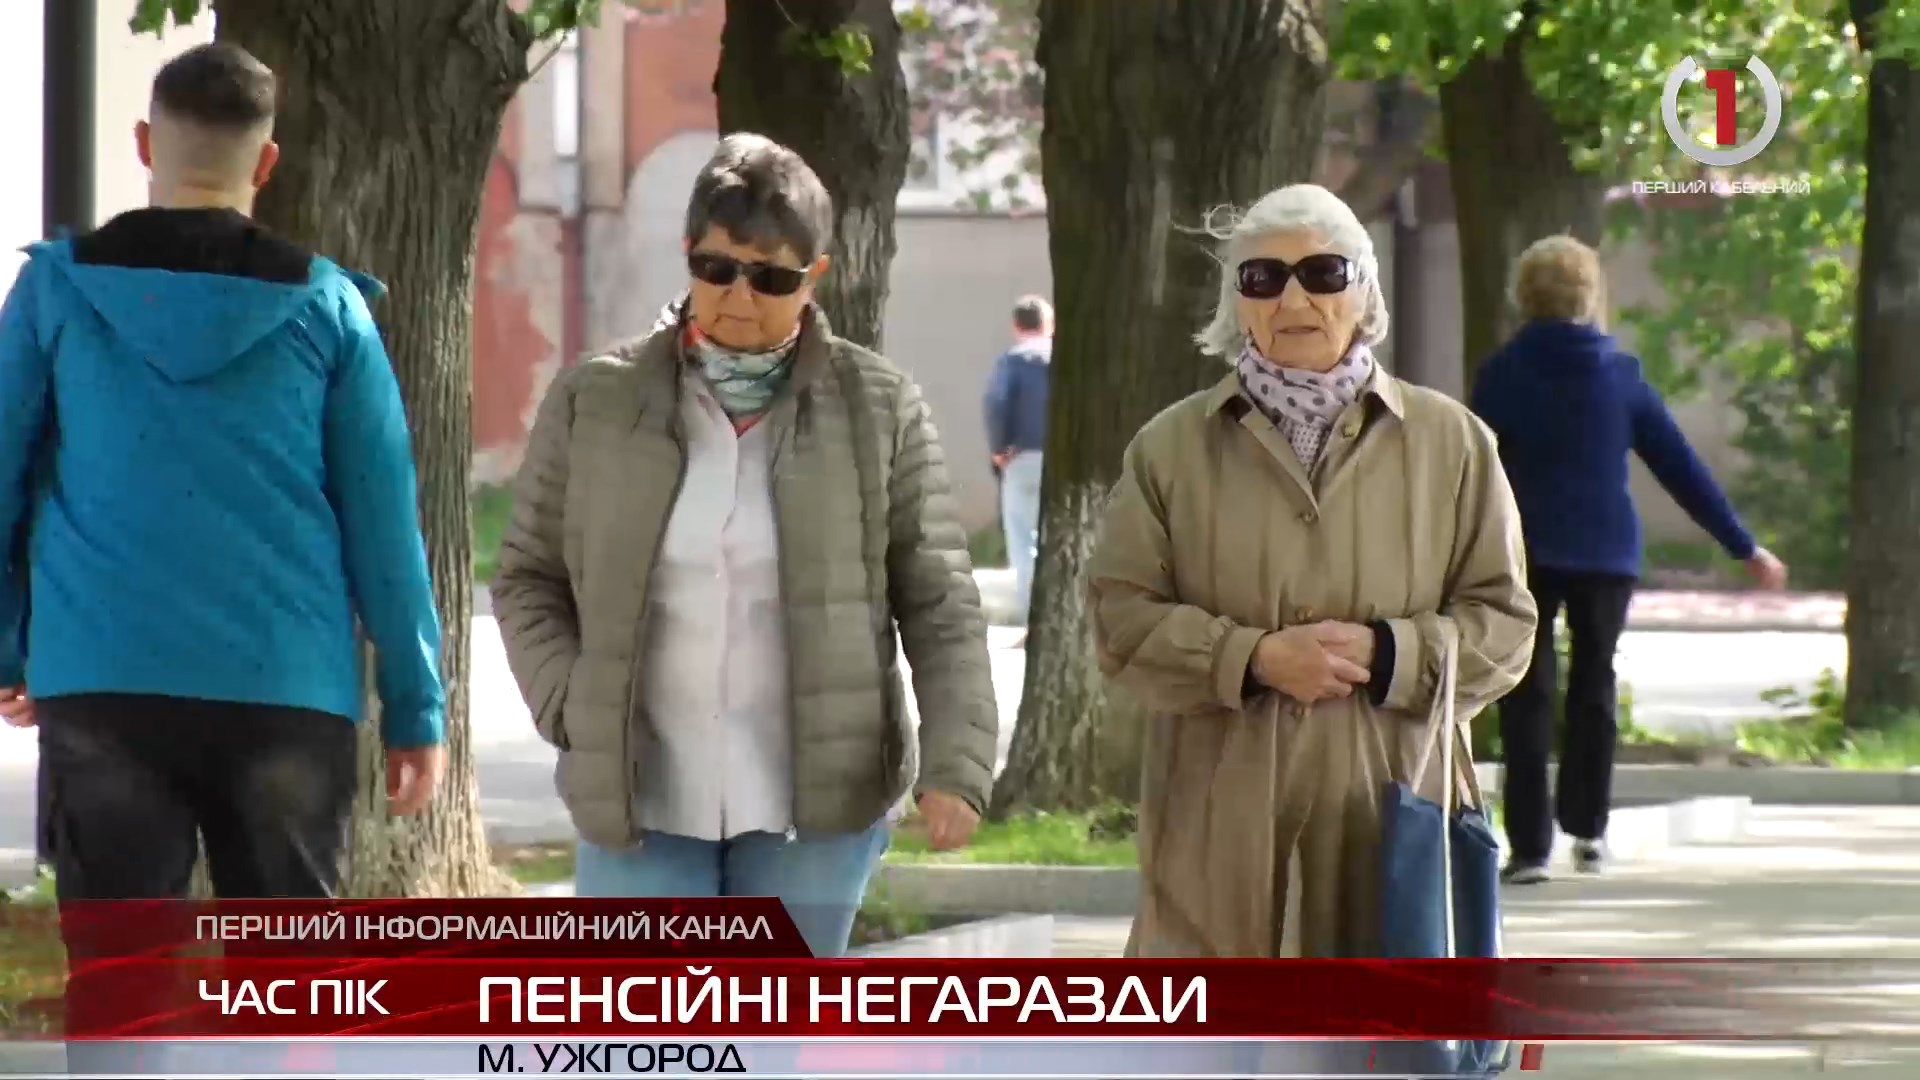 Чому на Закарпатті пенсія нижча за середню по Україні? (ВІДЕО)